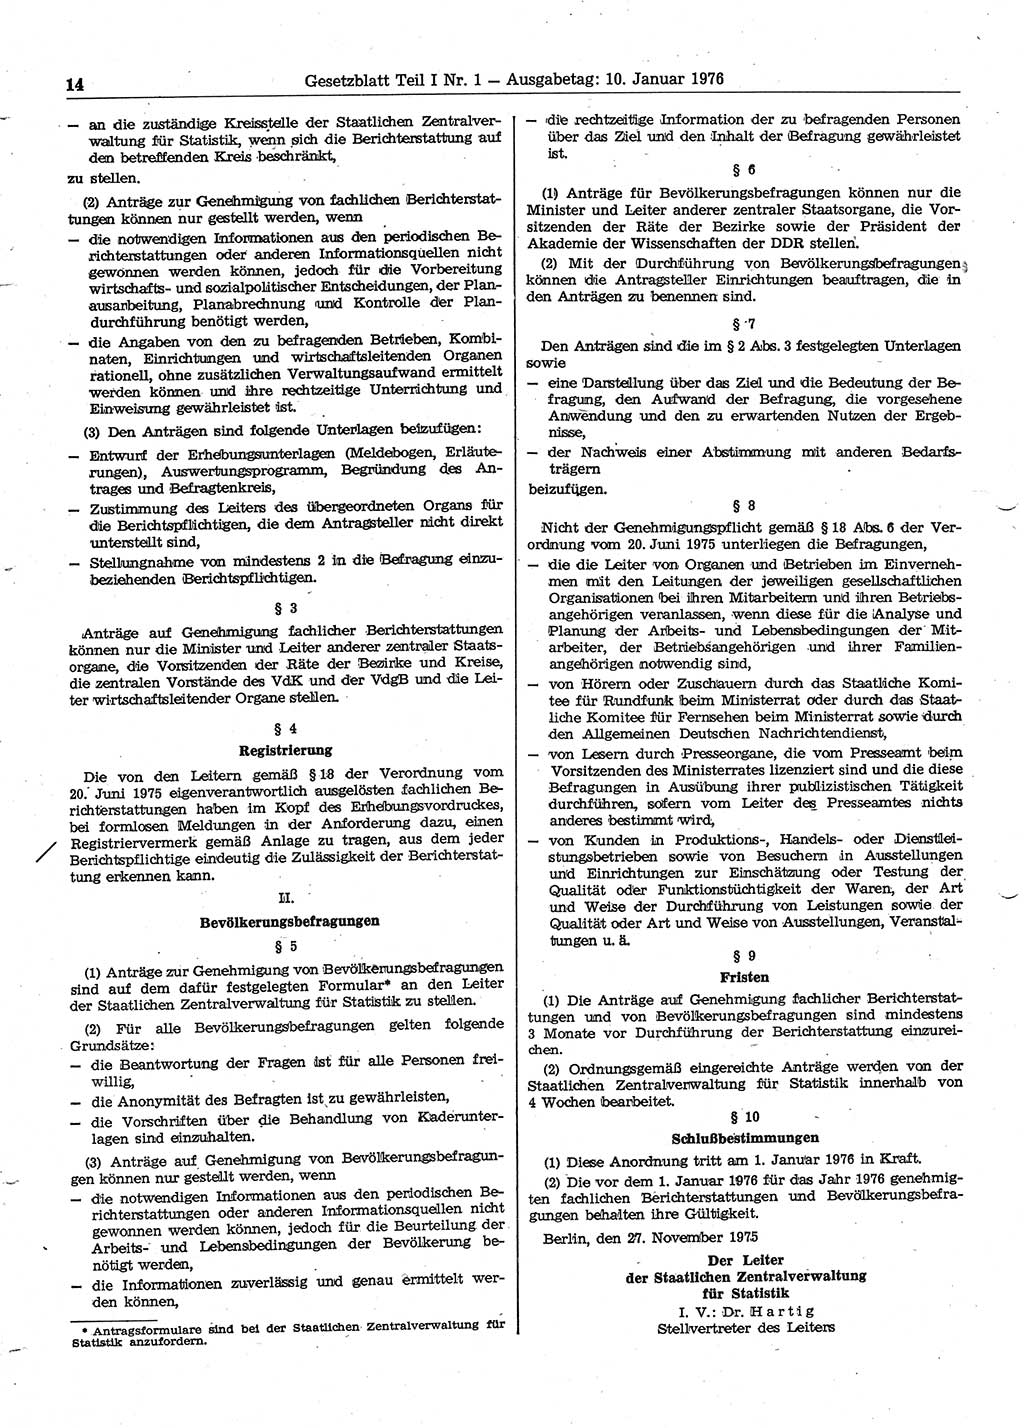 Gesetzblatt (GBl.) der Deutschen Demokratischen Republik (DDR) Teil Ⅰ 1976, Seite 14 (GBl. DDR Ⅰ 1976, S. 14)